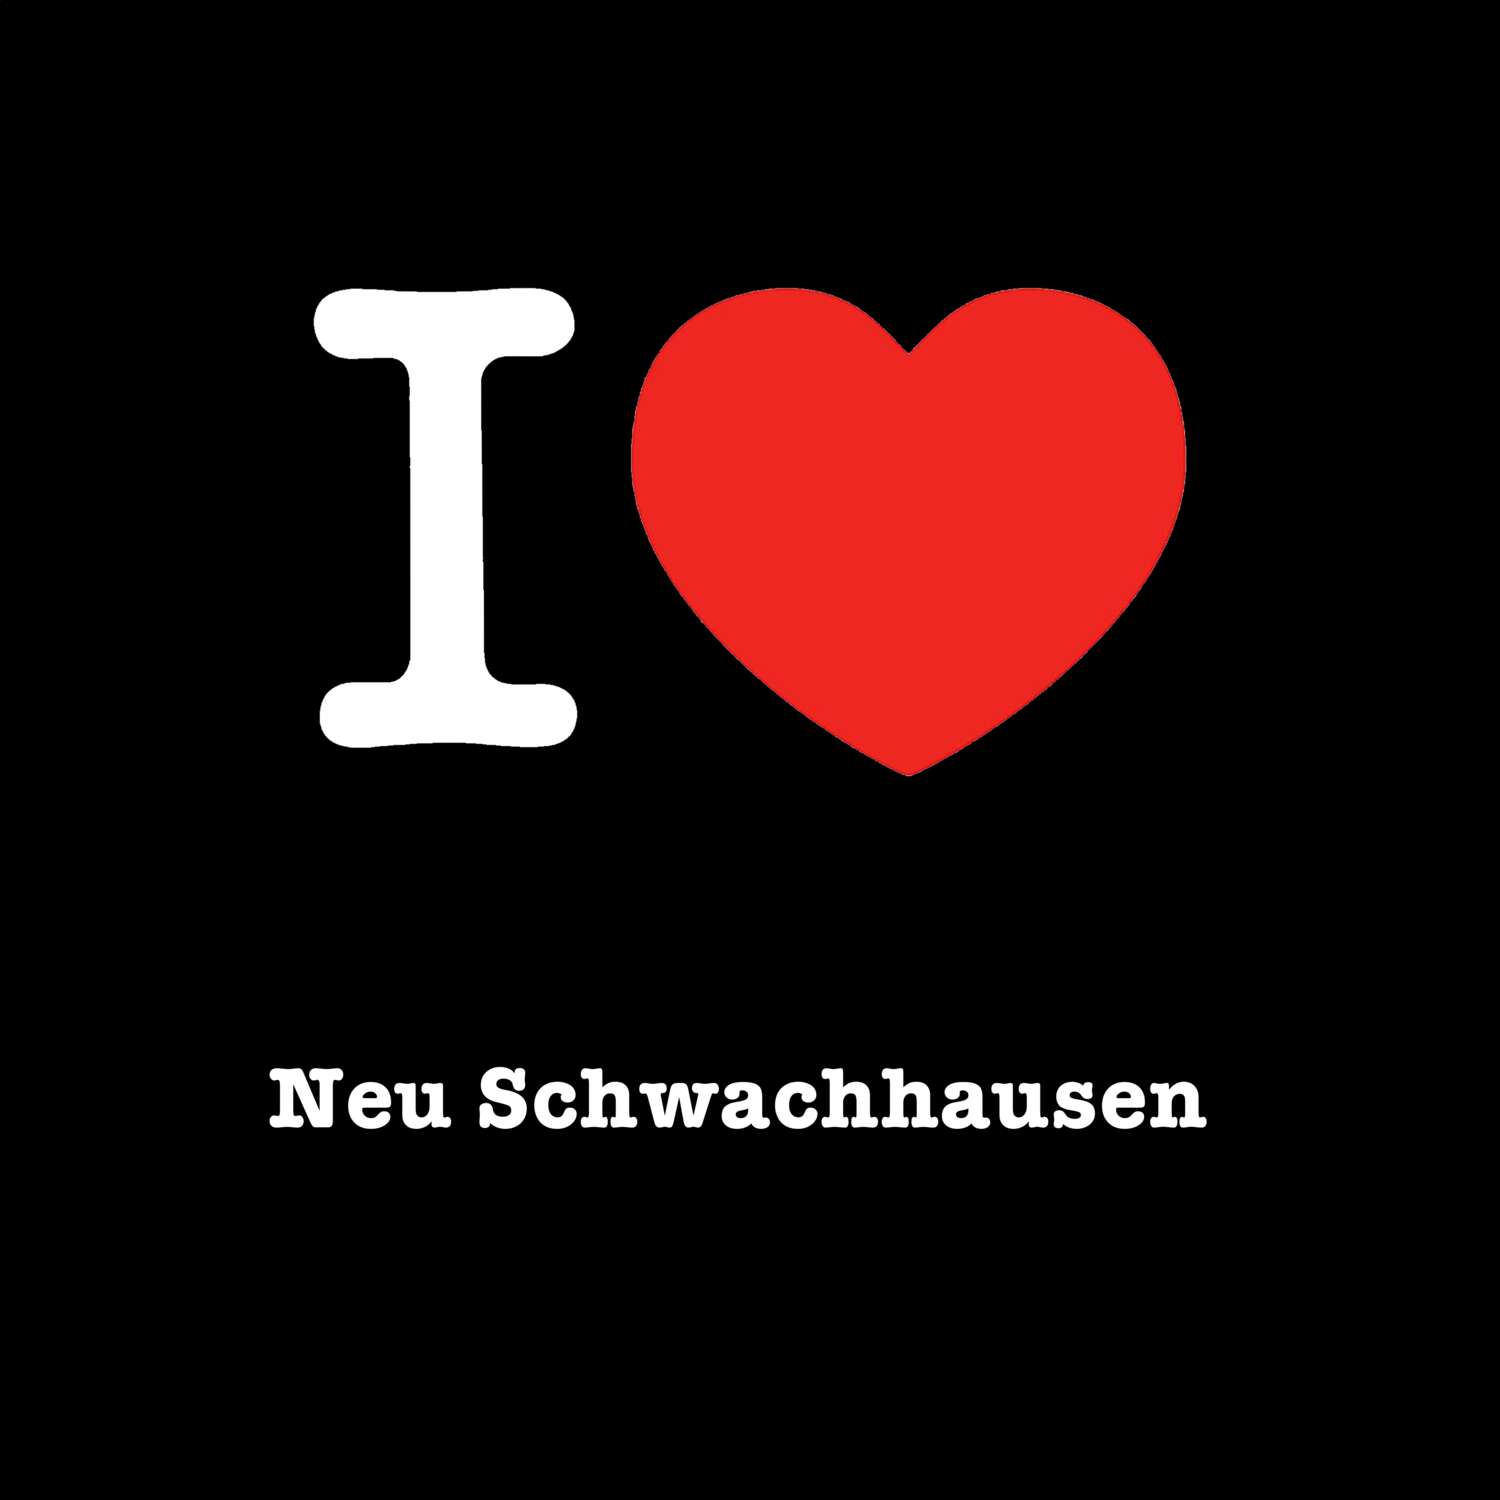 Neu Schwachhausen T-Shirt »I love«